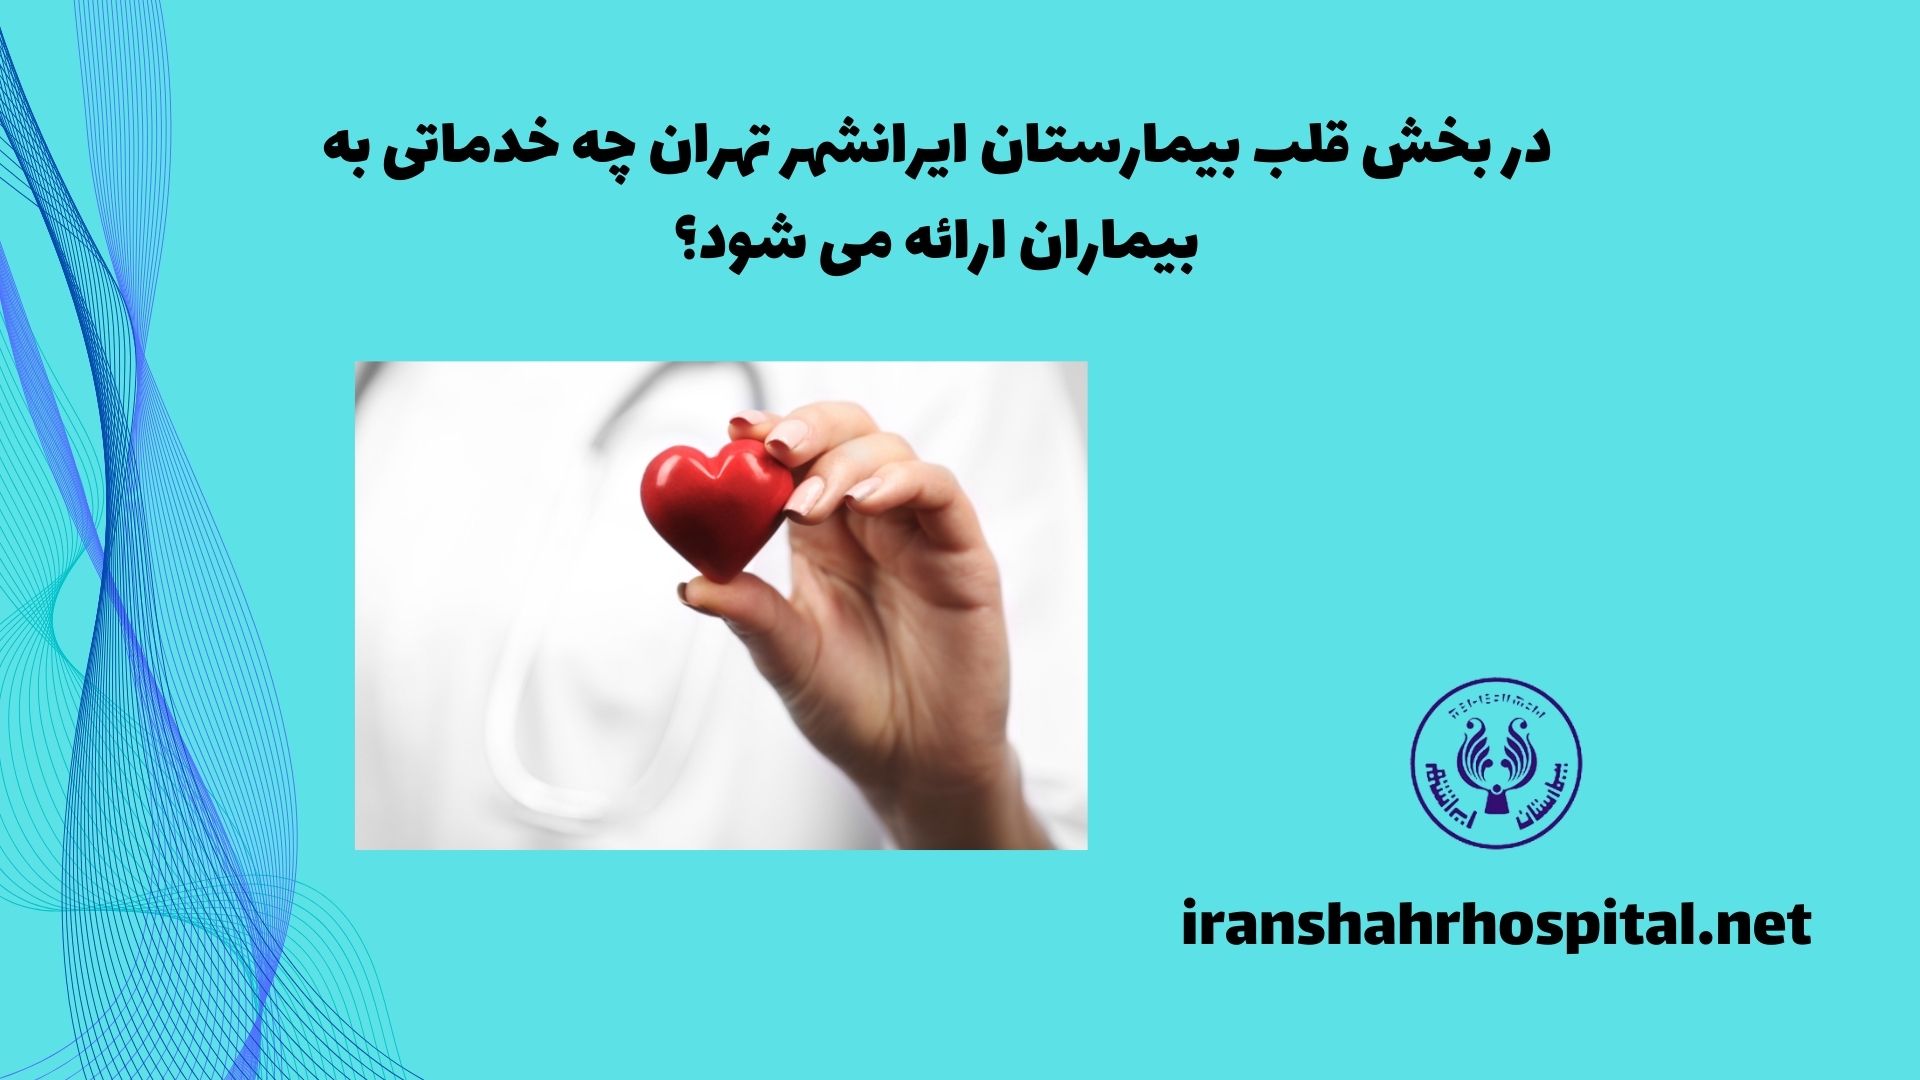 در بخش قلب بیمارستان ایرانشهر تهران، چه خدماتی به بیماران ارائه می شود؟